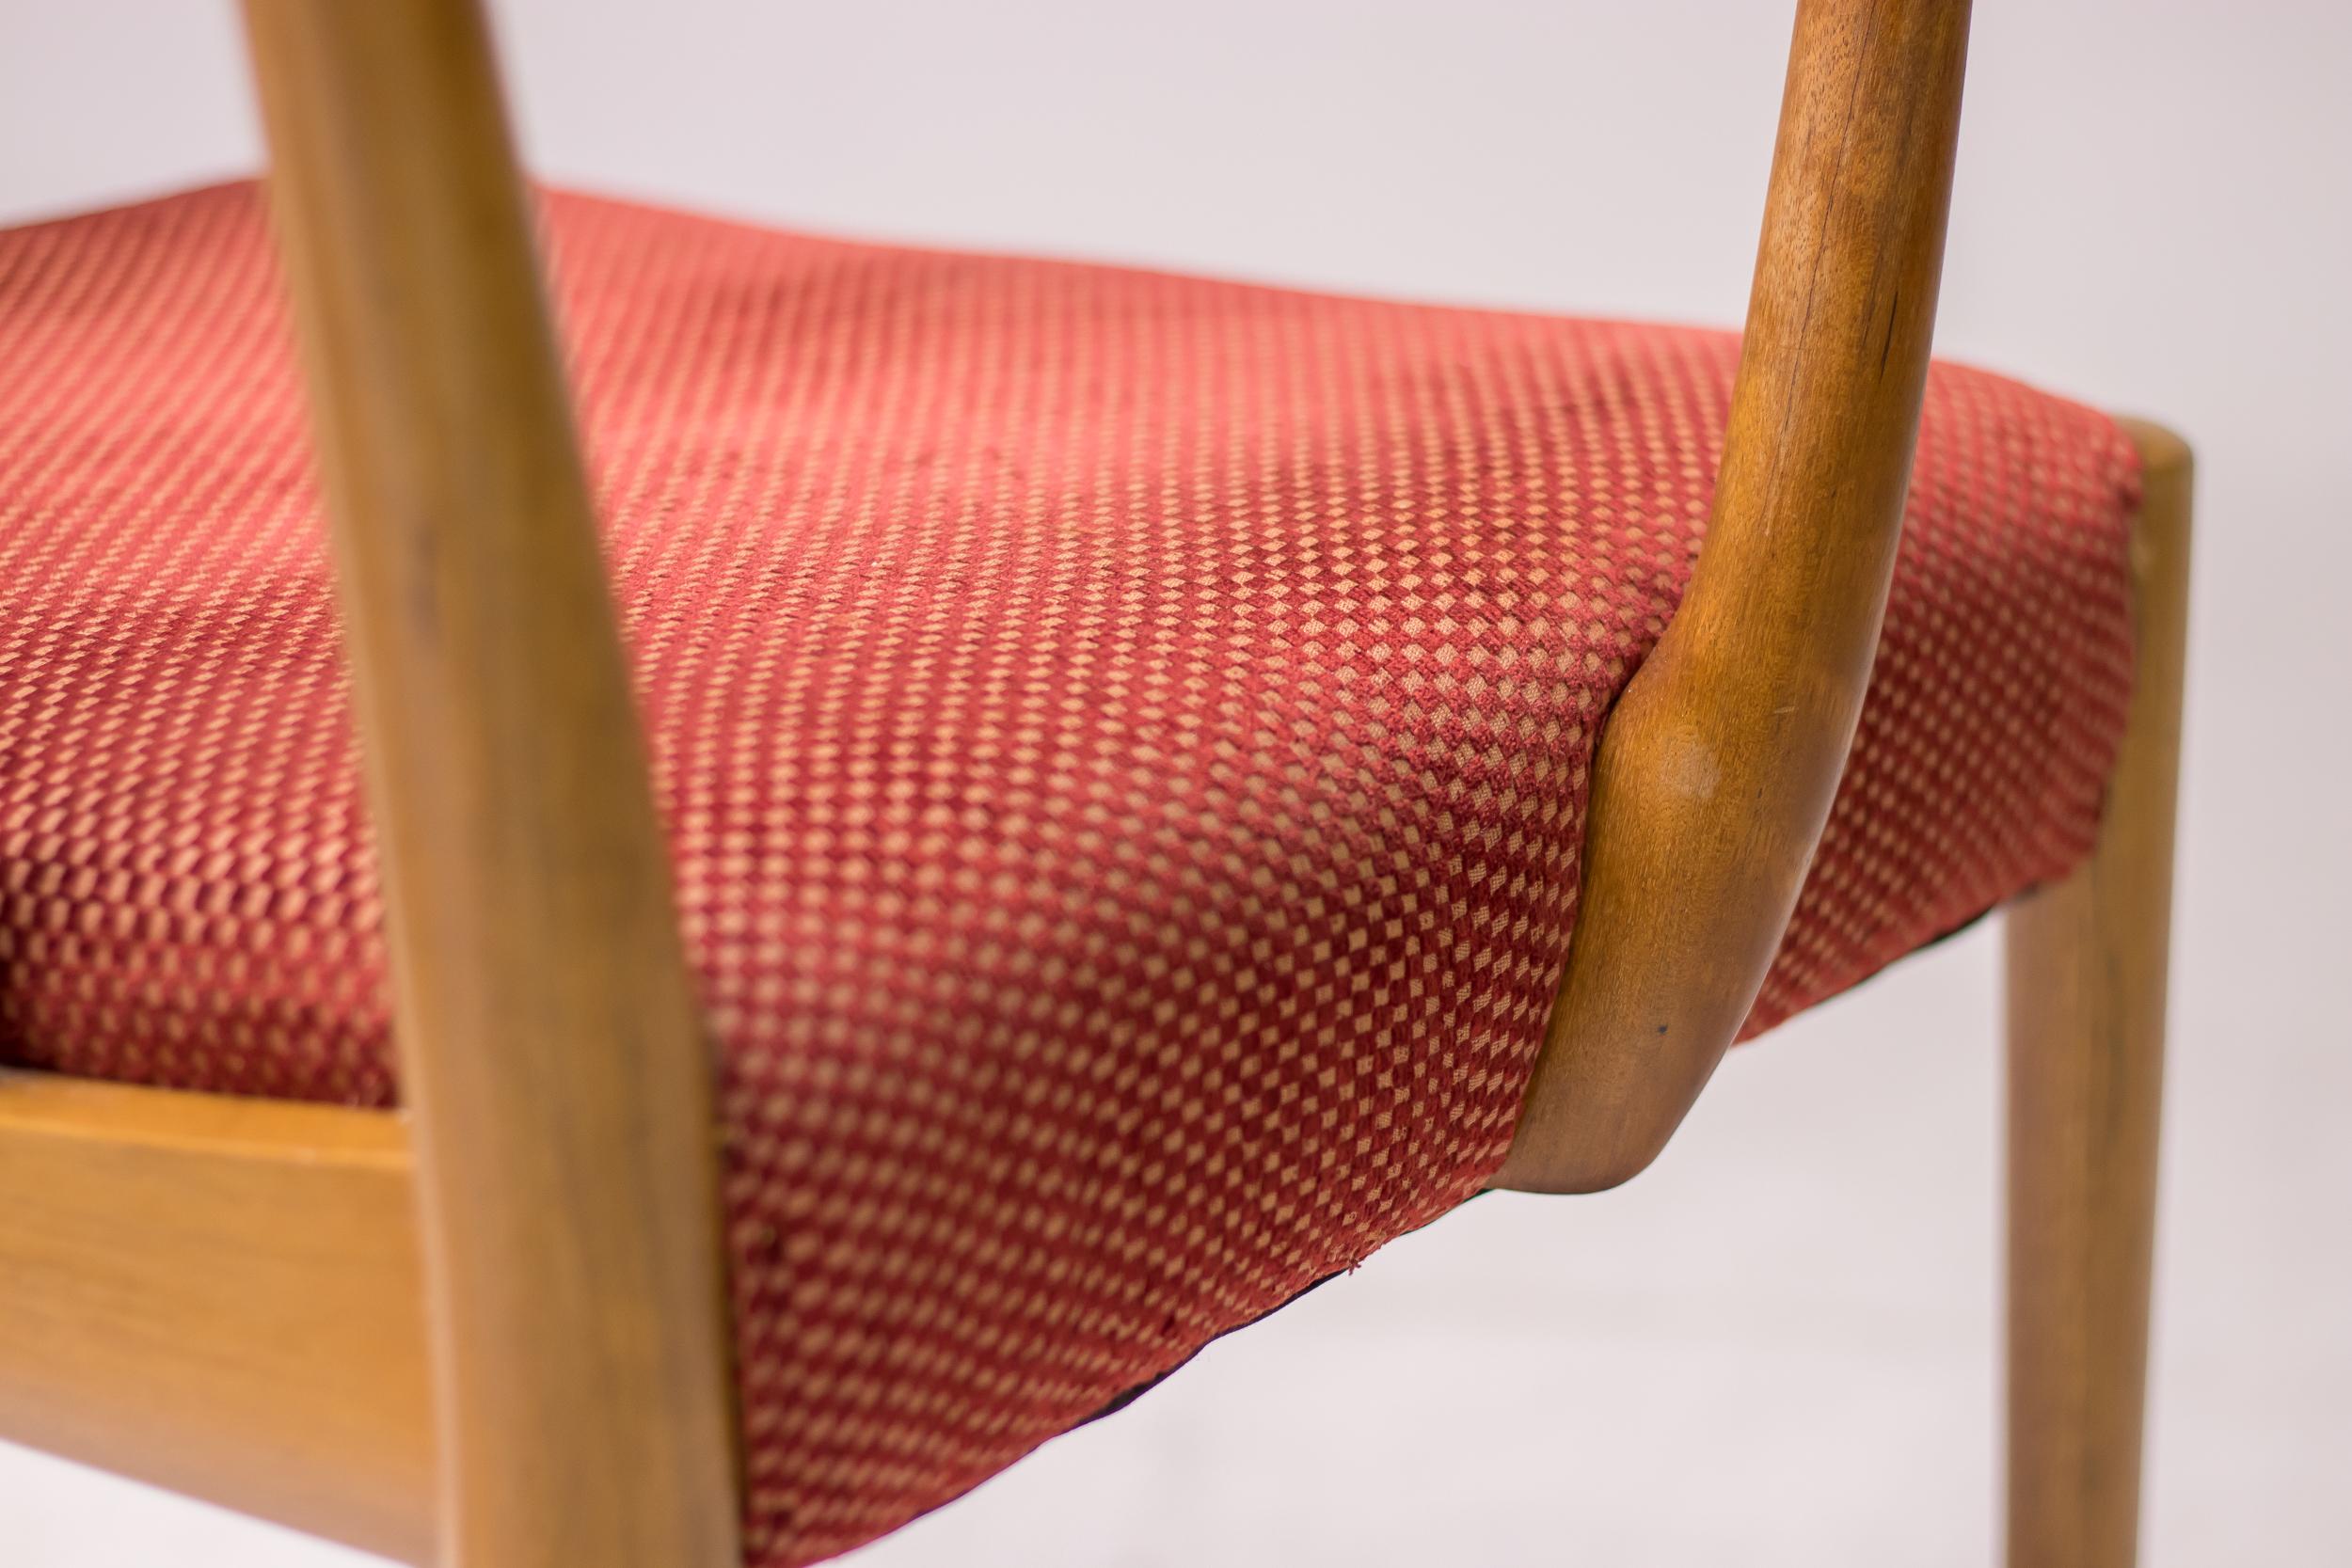 Wunderbar organisch geschnitzte Esszimmerstühle aus Nussbaumholz, hergestellt in Italien um 1955.
Die Stühle sind nicht gekennzeichnet, aber eindeutig von den Entwürfen von Carlo Mollino inspiriert.
Passendes Set aus 2 Sesseln und 4 Beistellstühlen,